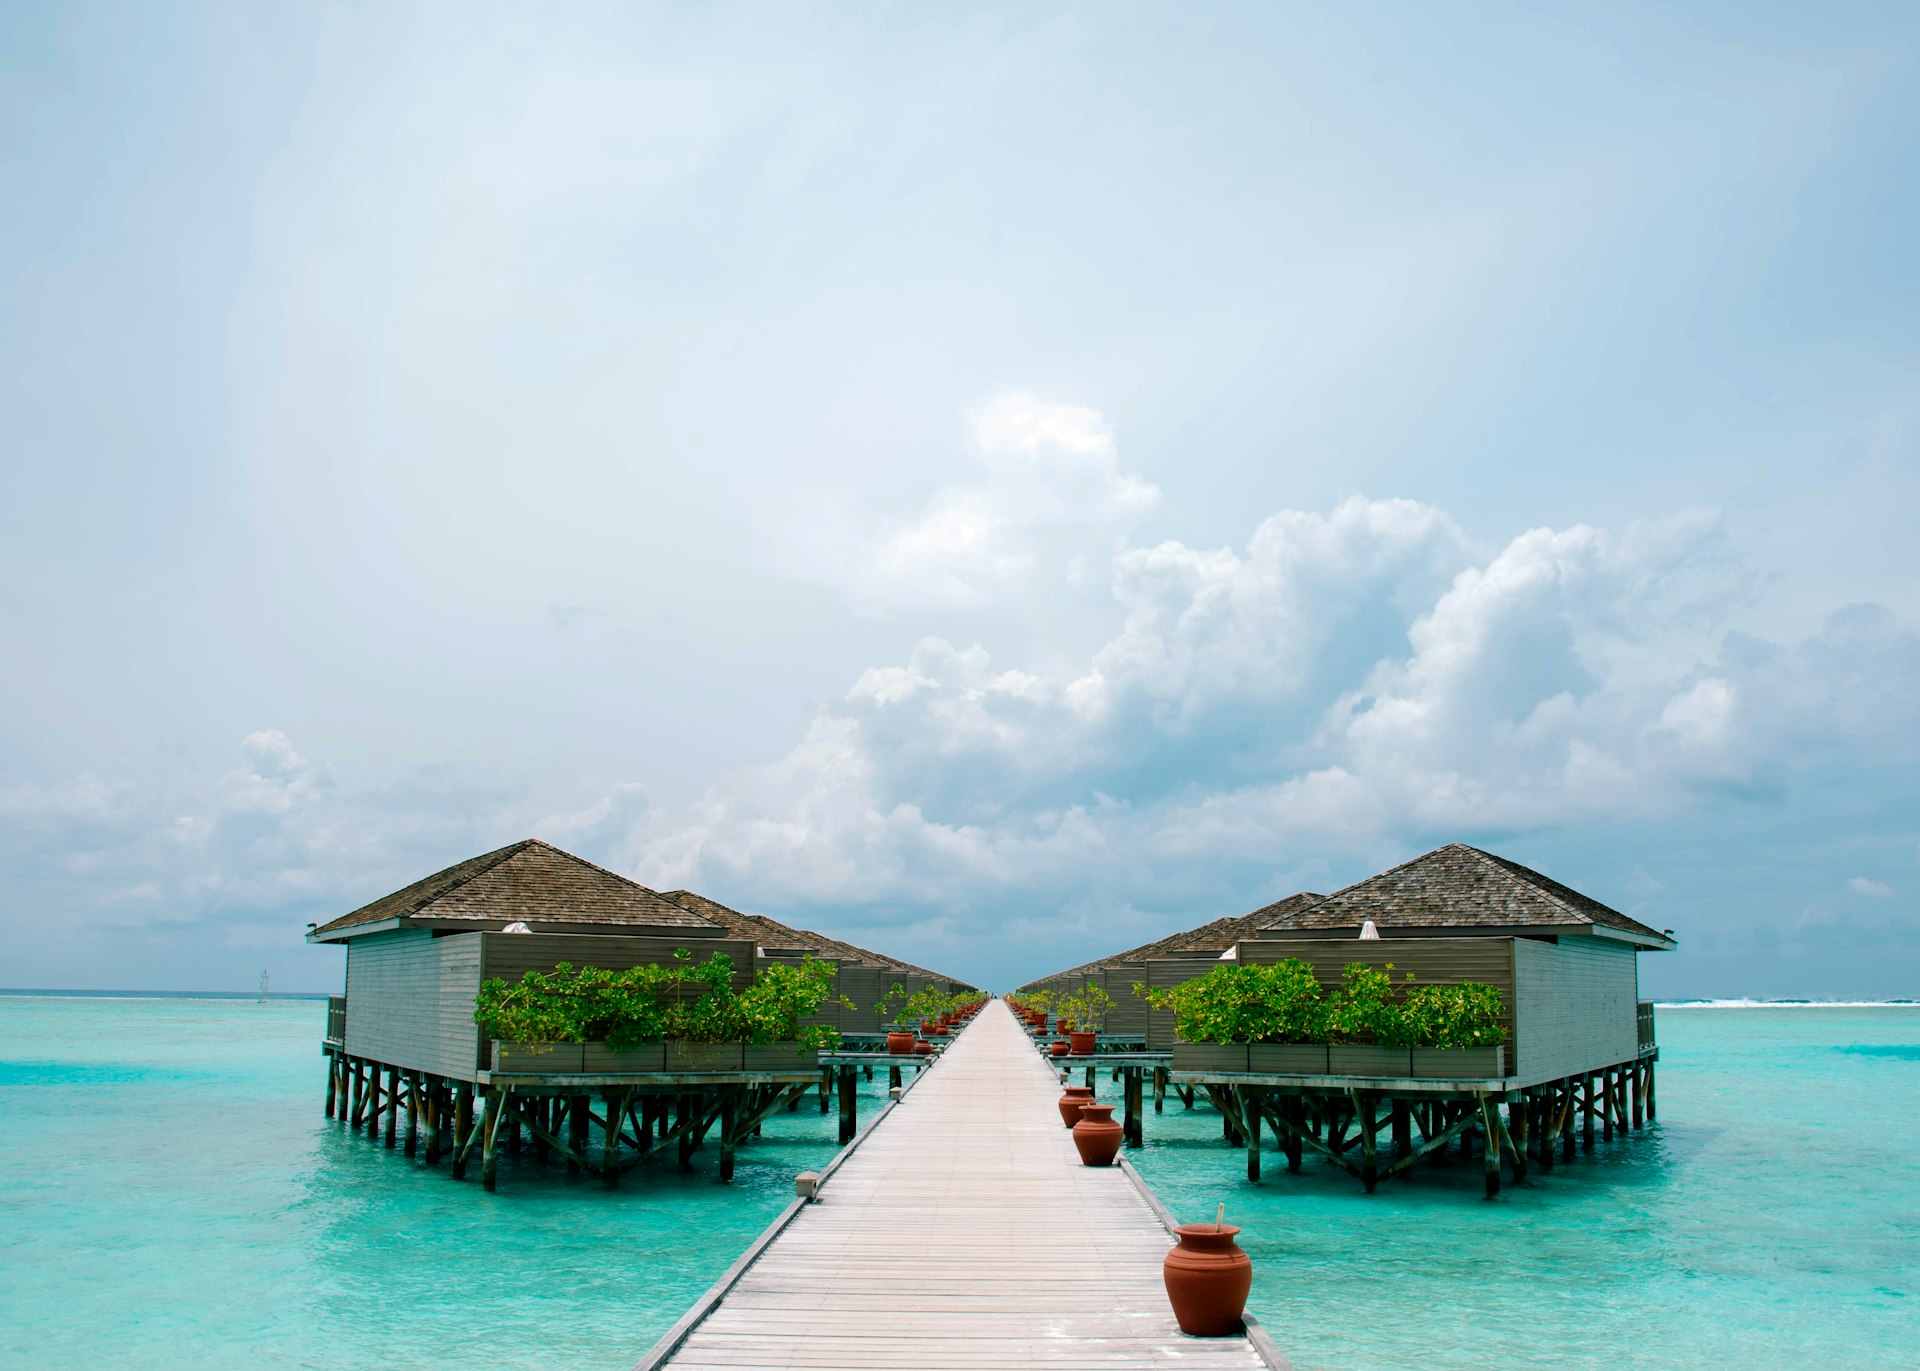 A boardwalk to the overwater villas at Meeru Island Resort, Maldives